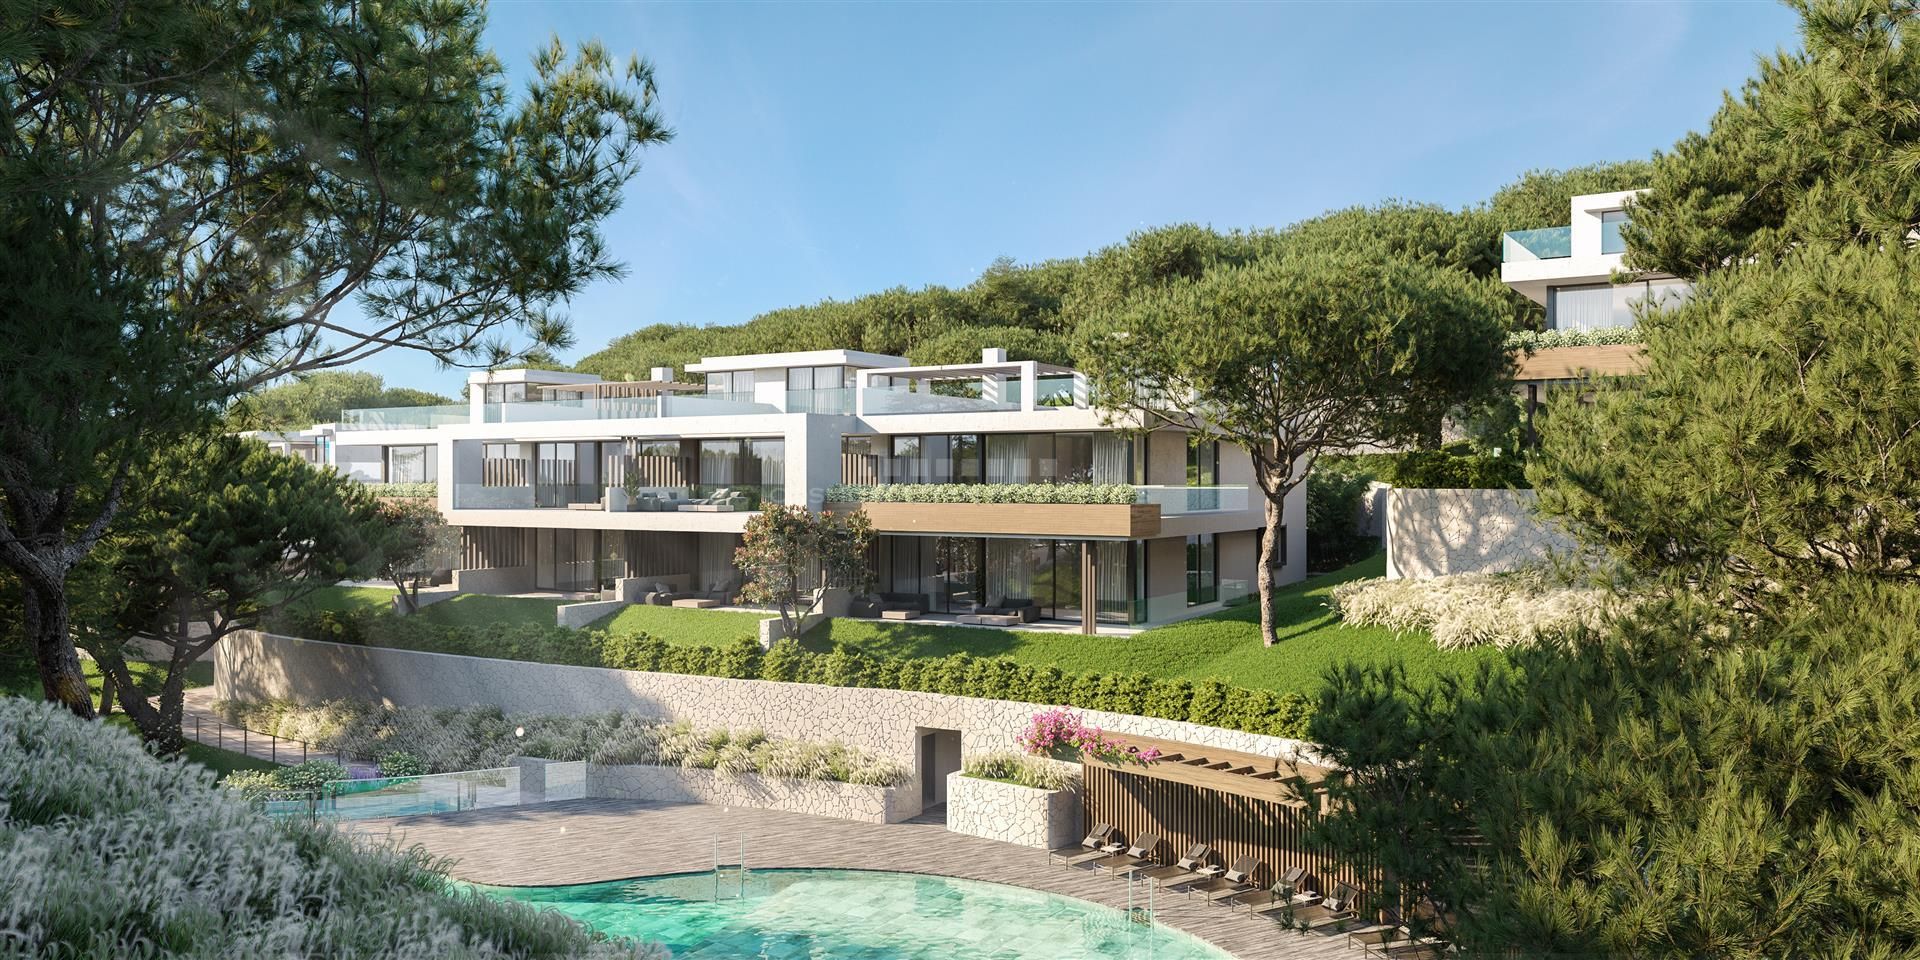 Exclusivo complejo residencial Venere Marbella